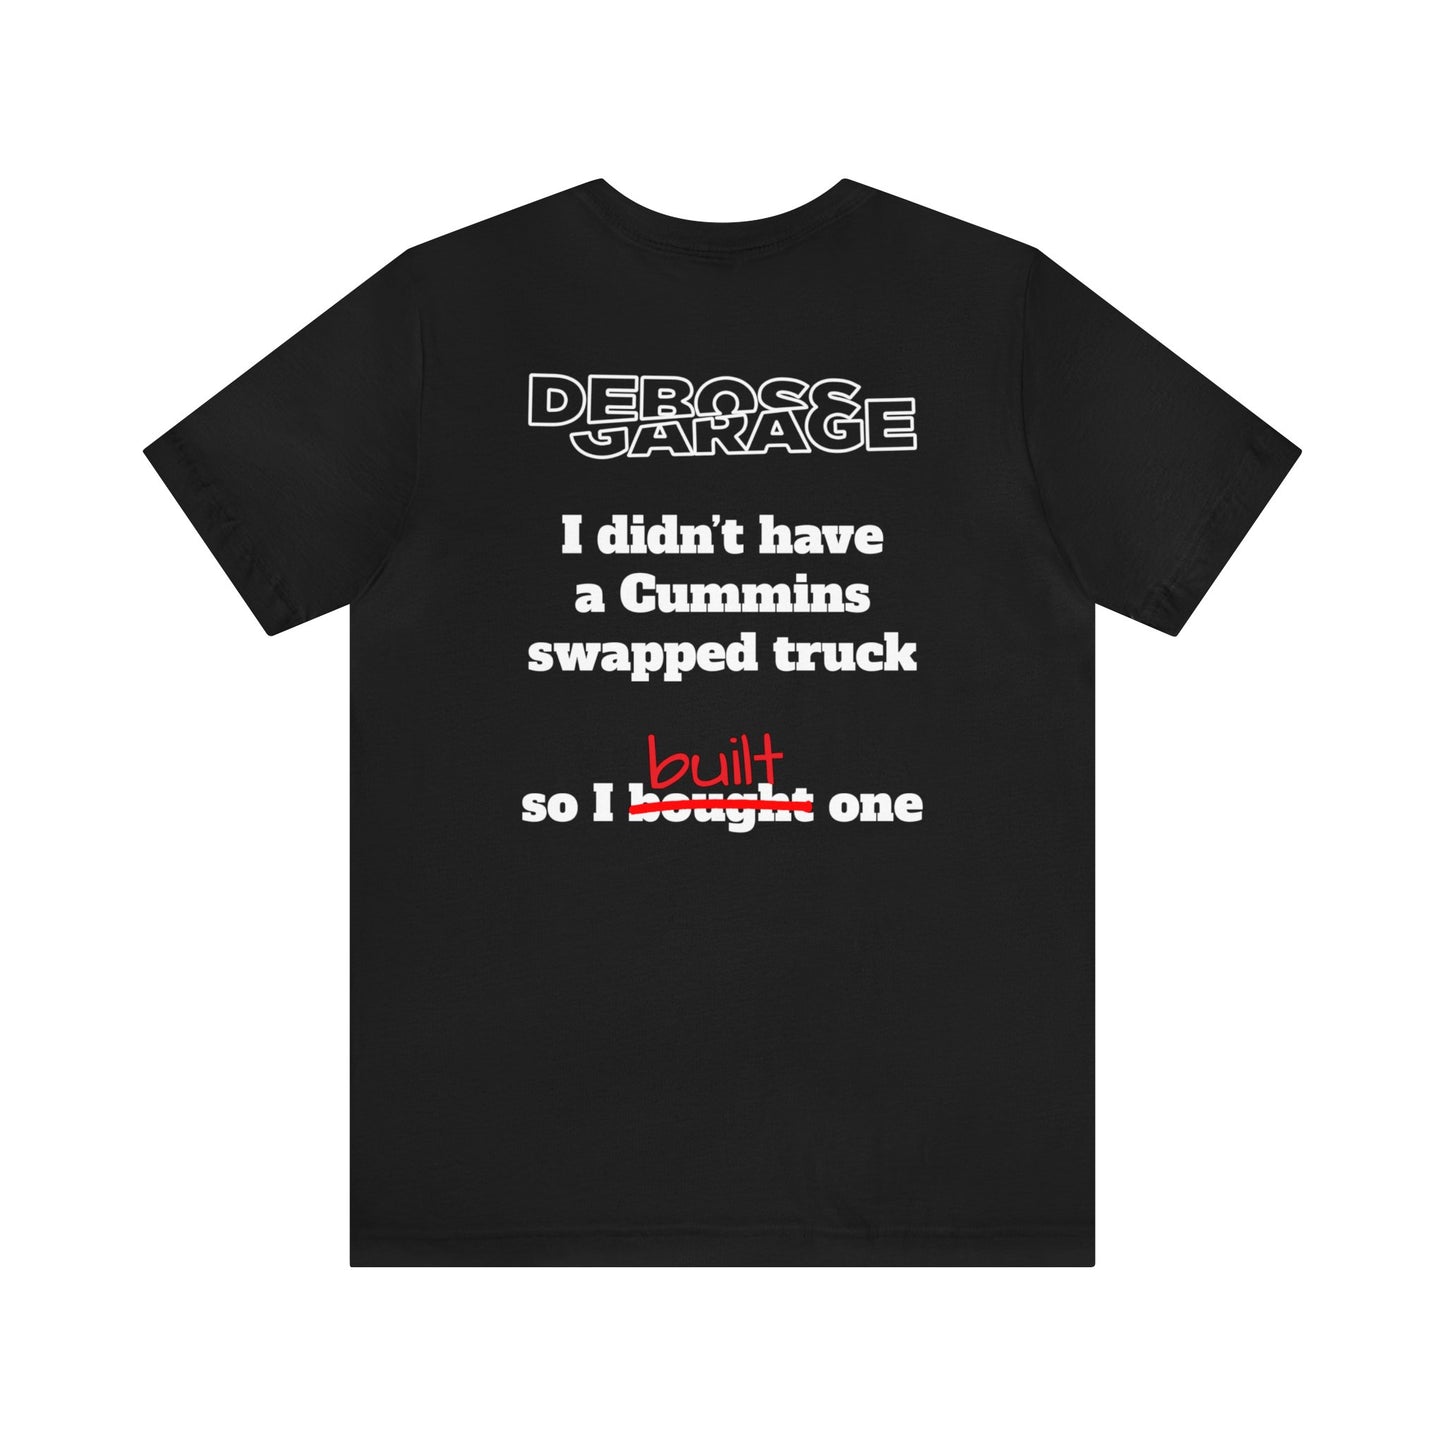 Cummins Swap Truck T-shirt